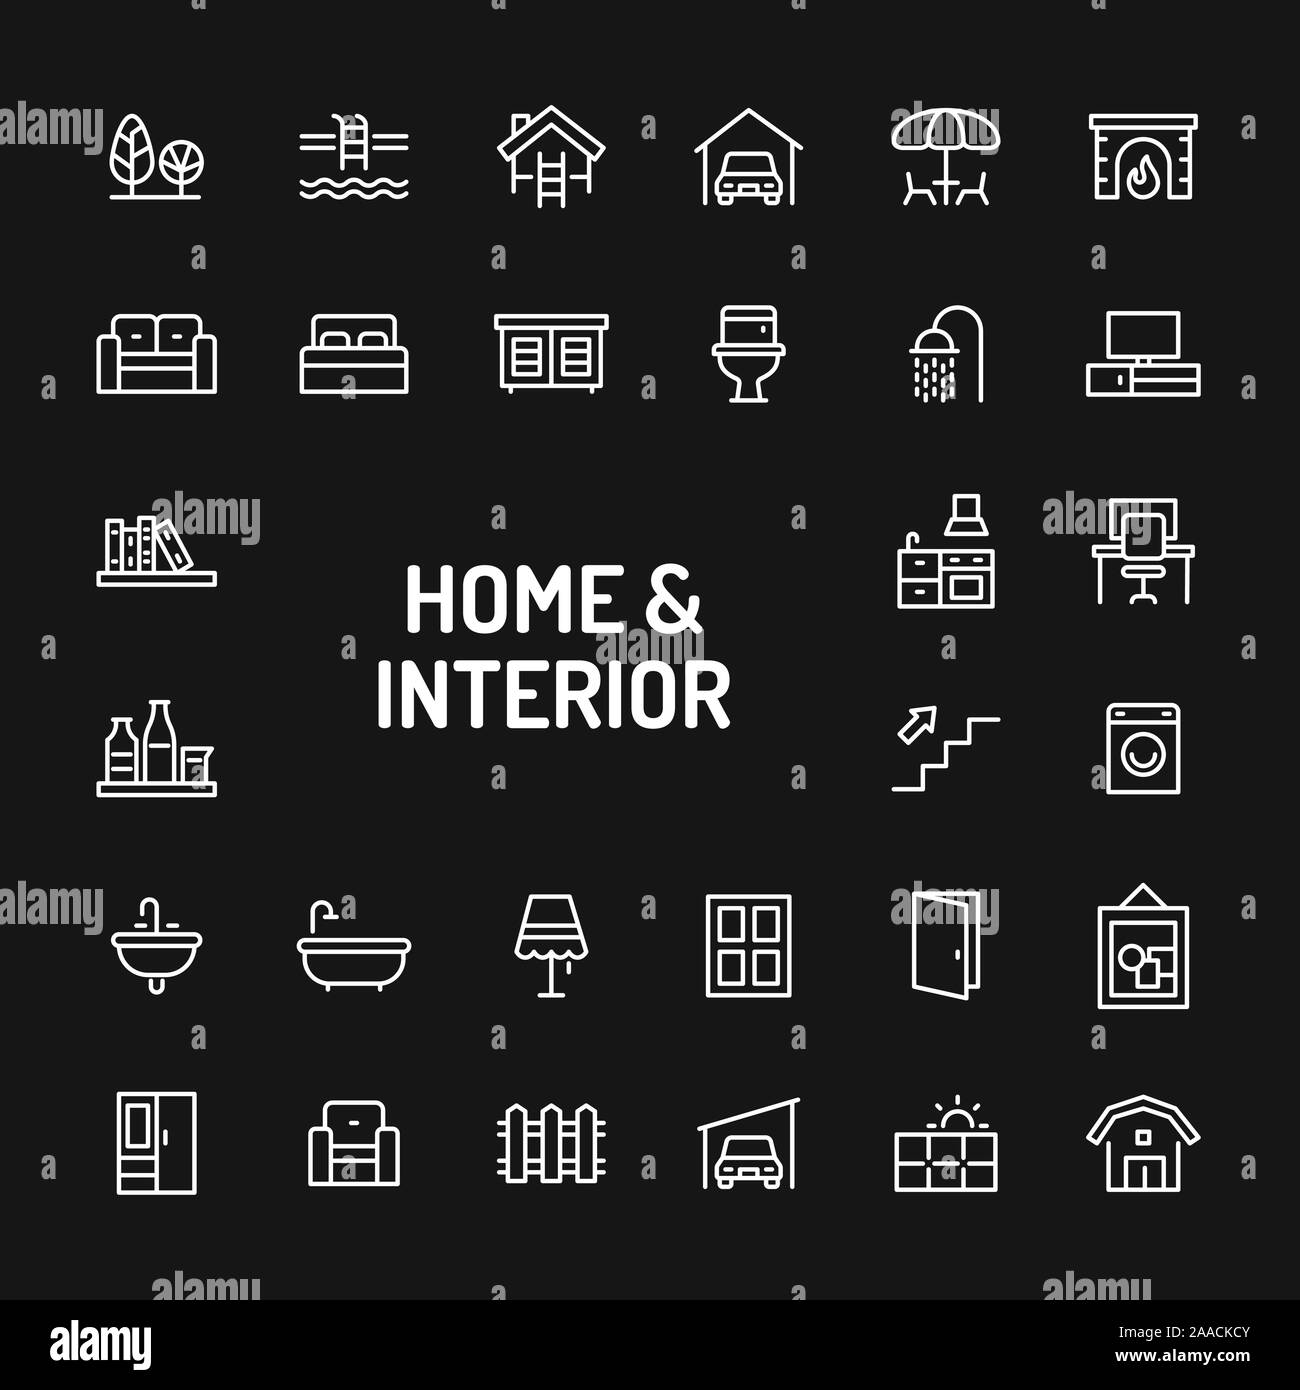 Einfache weiße Zeile für Symbole über schwarzen Hintergrund zu Hause, Wohnen, Einrichtung & Möbel im Zusammenhang isoliert. Vektor Zeichen und Symbole Sammlungen für websi Stock Vektor